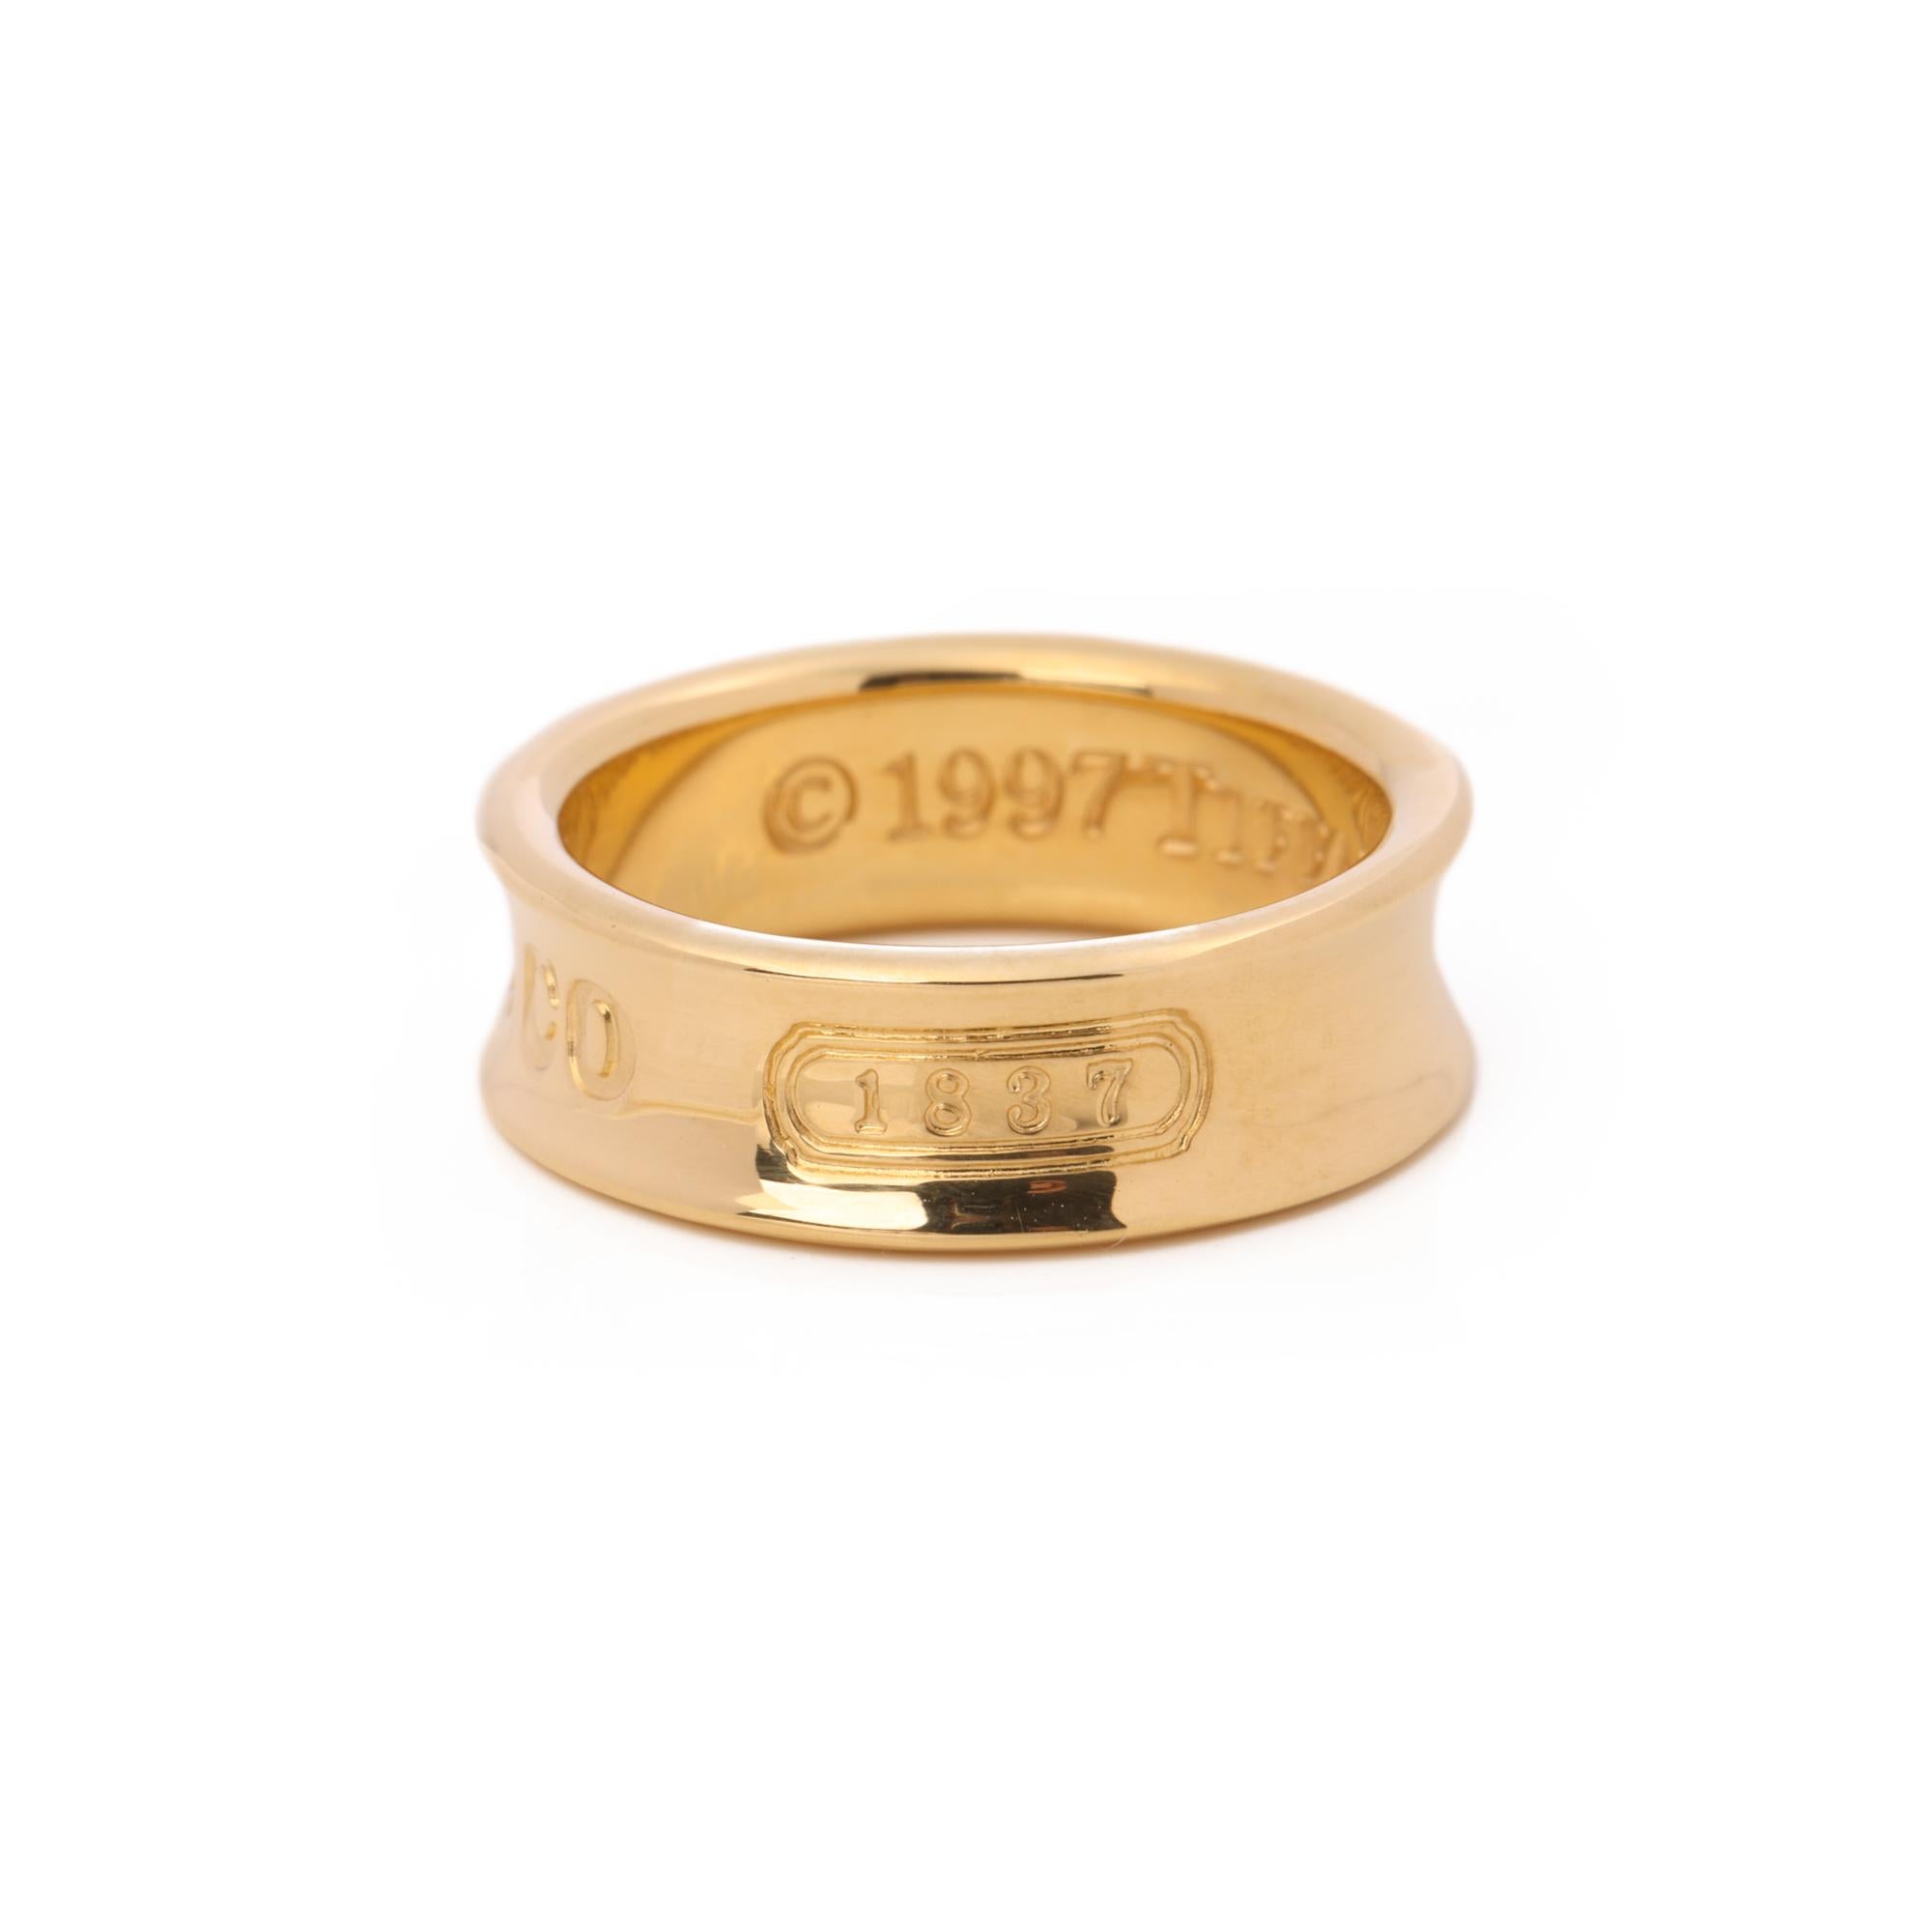 1837 tiffany ring